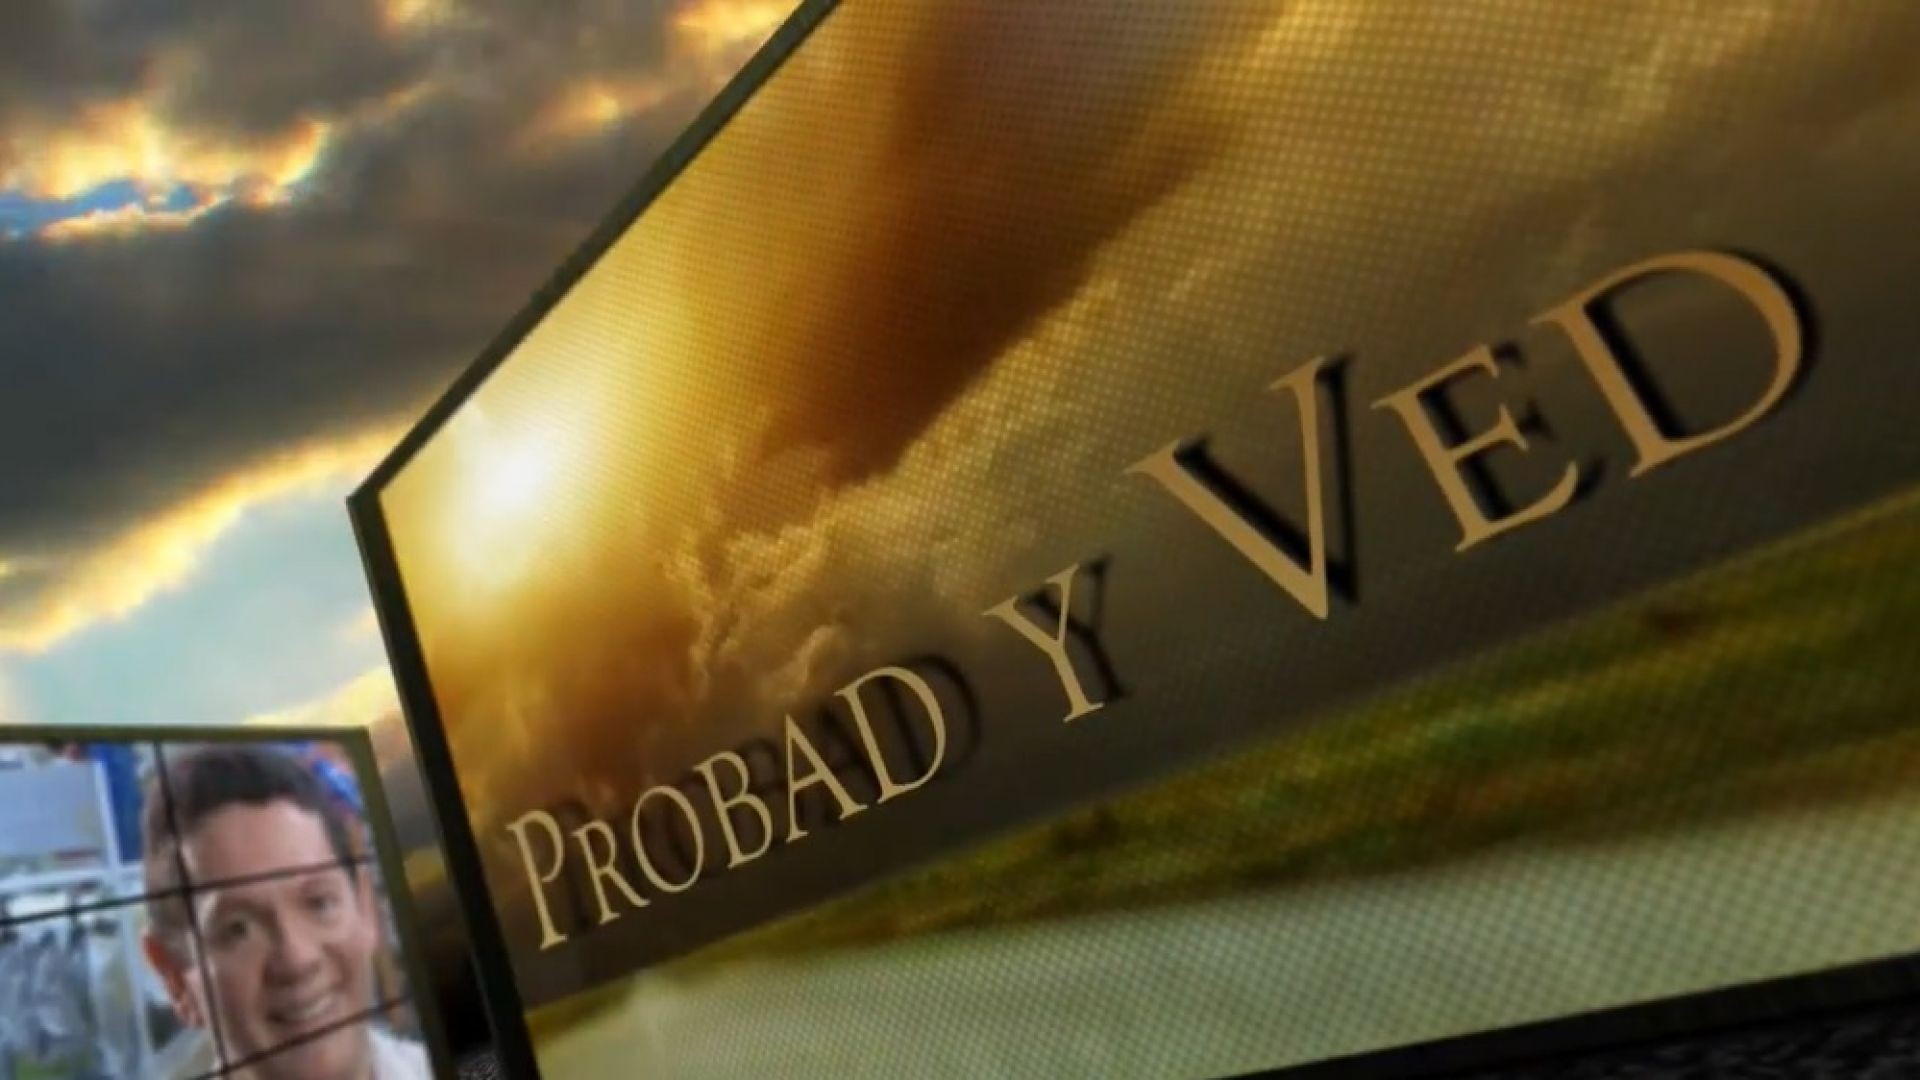 Probad y Ved 2013 -  Dios escucho mi voz - 02/Nov